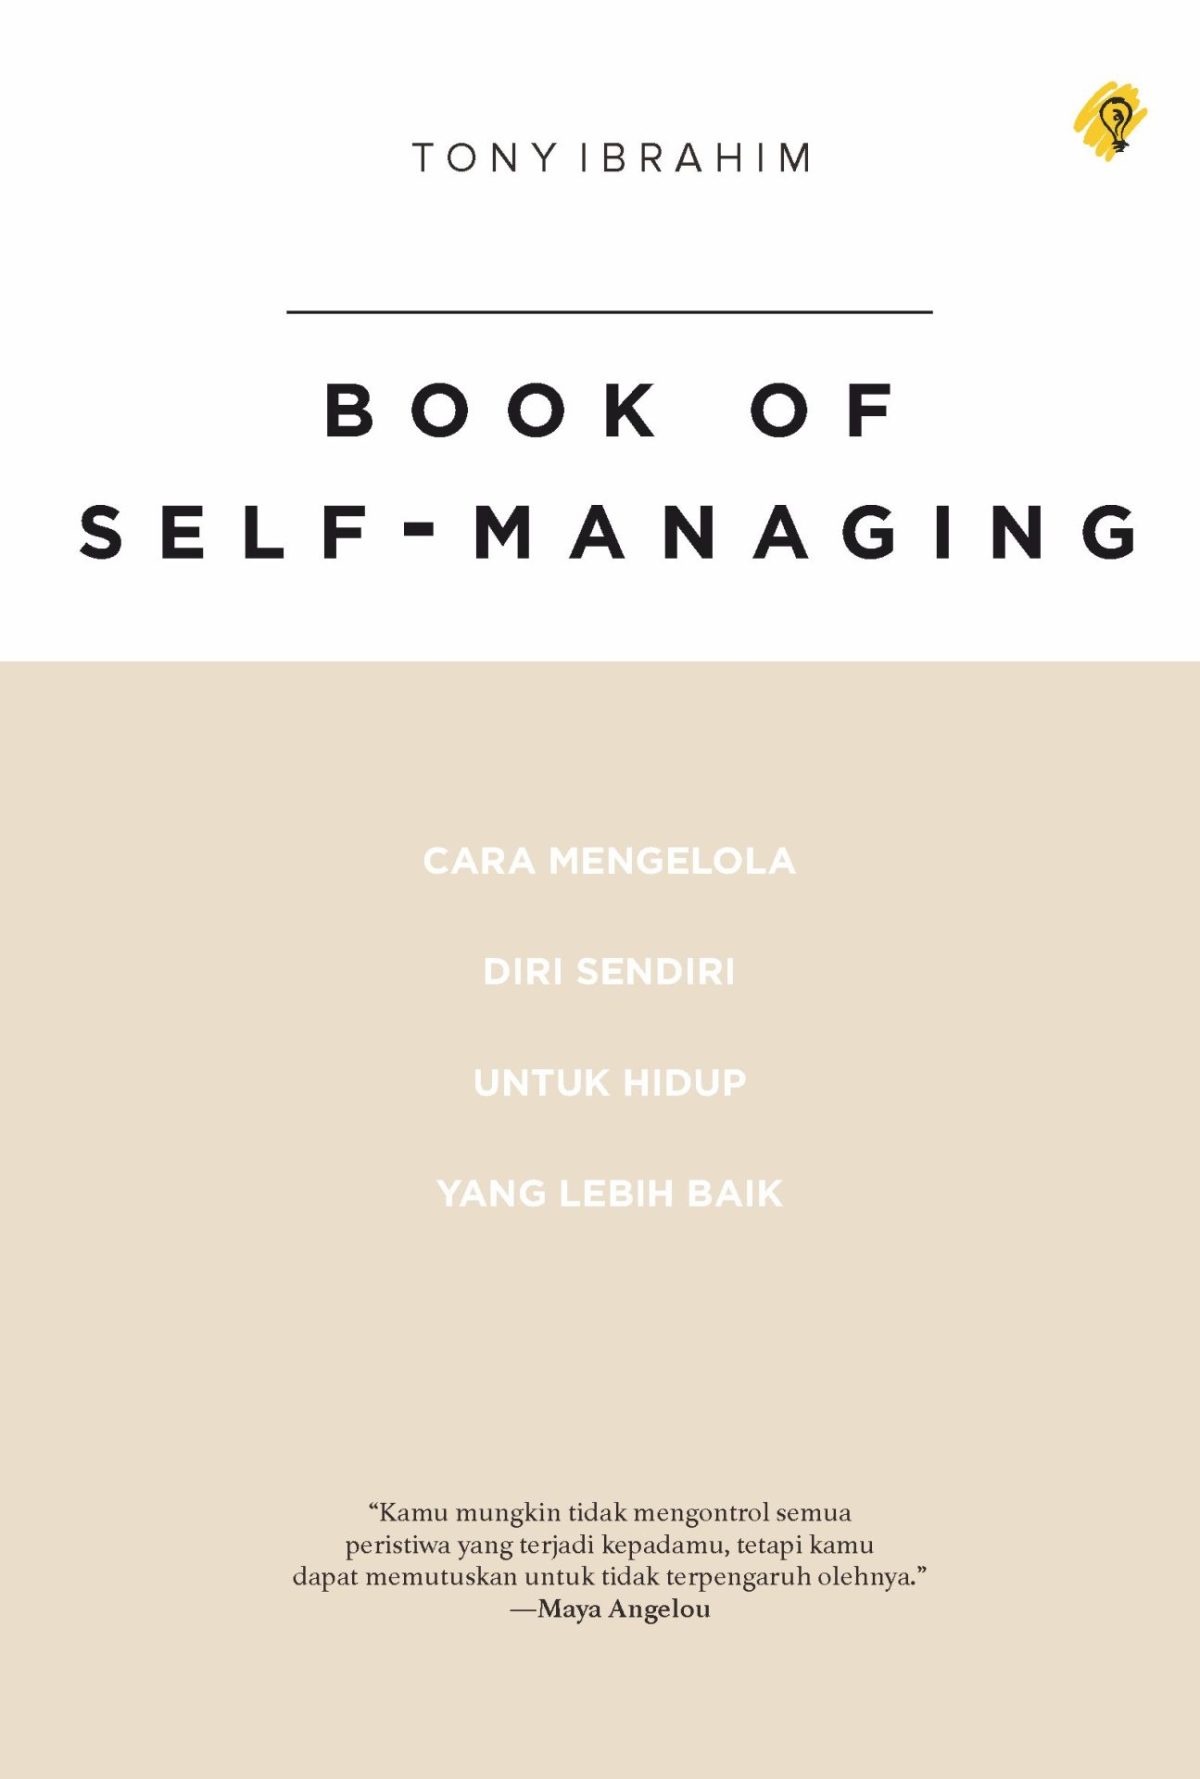 Book Of Self-Managing